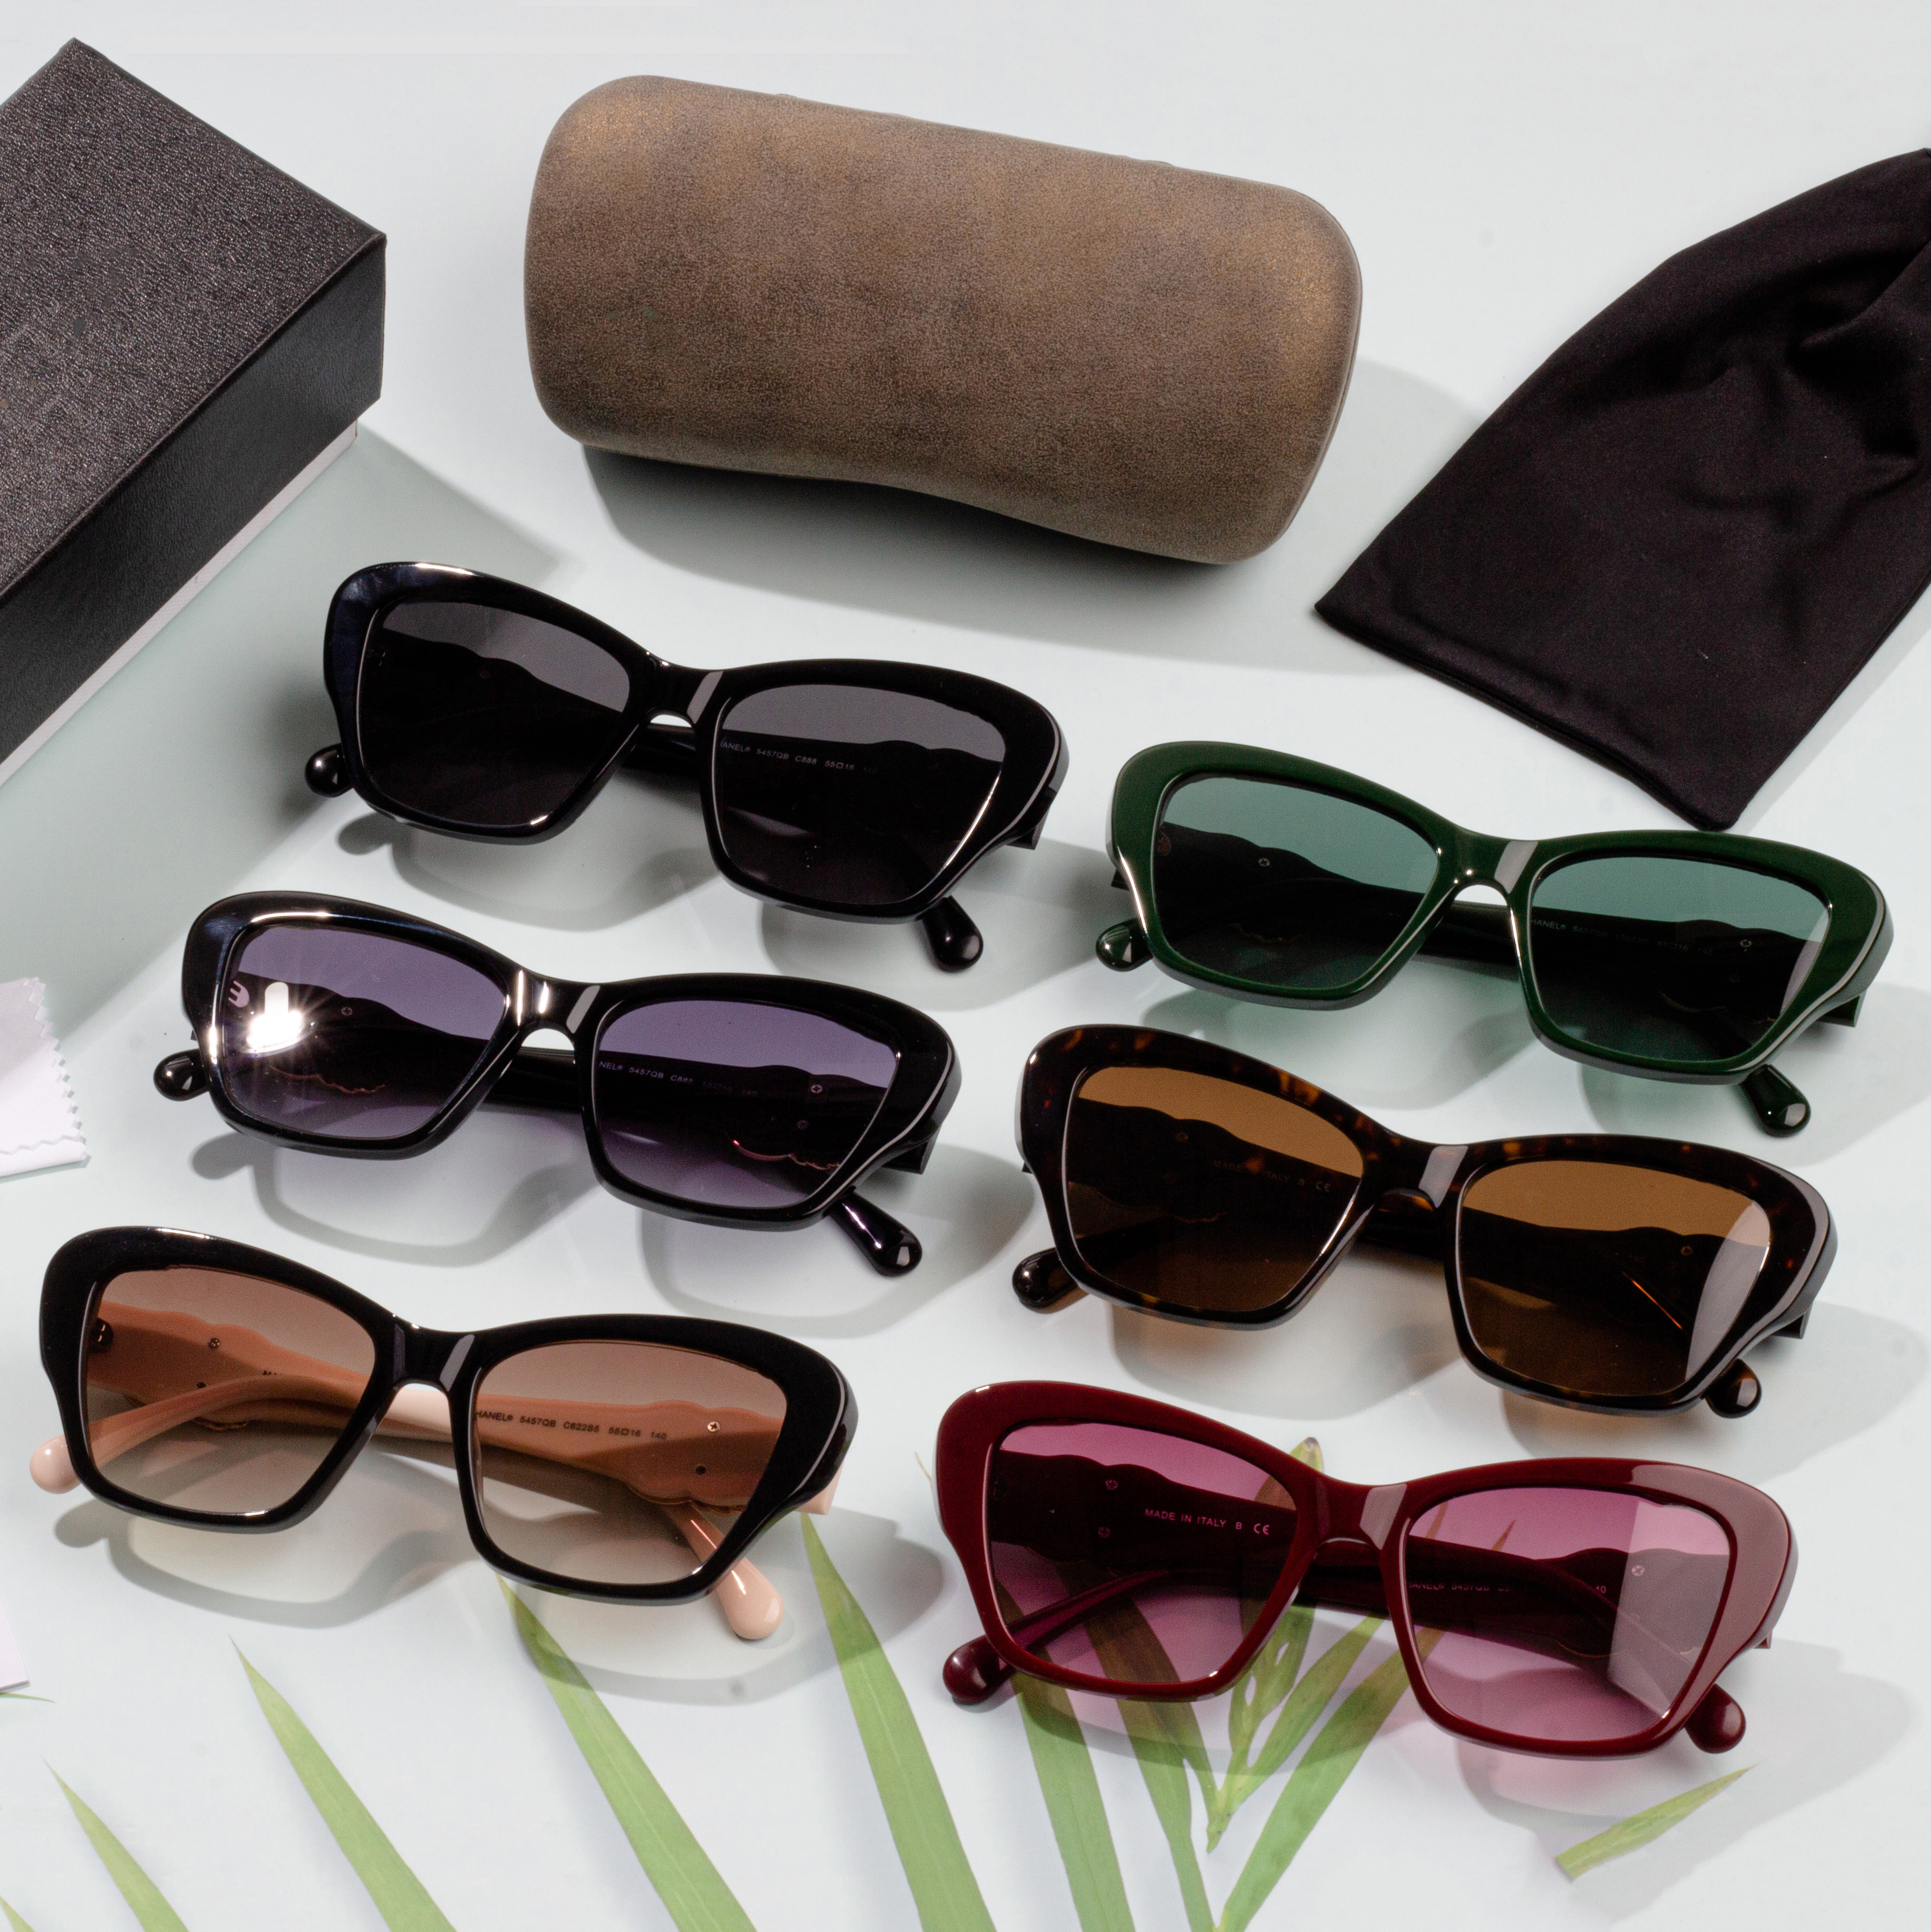 Wholesale Sunglasses Orlando –  UV 400 Protection Lady Sunglasses Promotion – HJ EYEWEAR